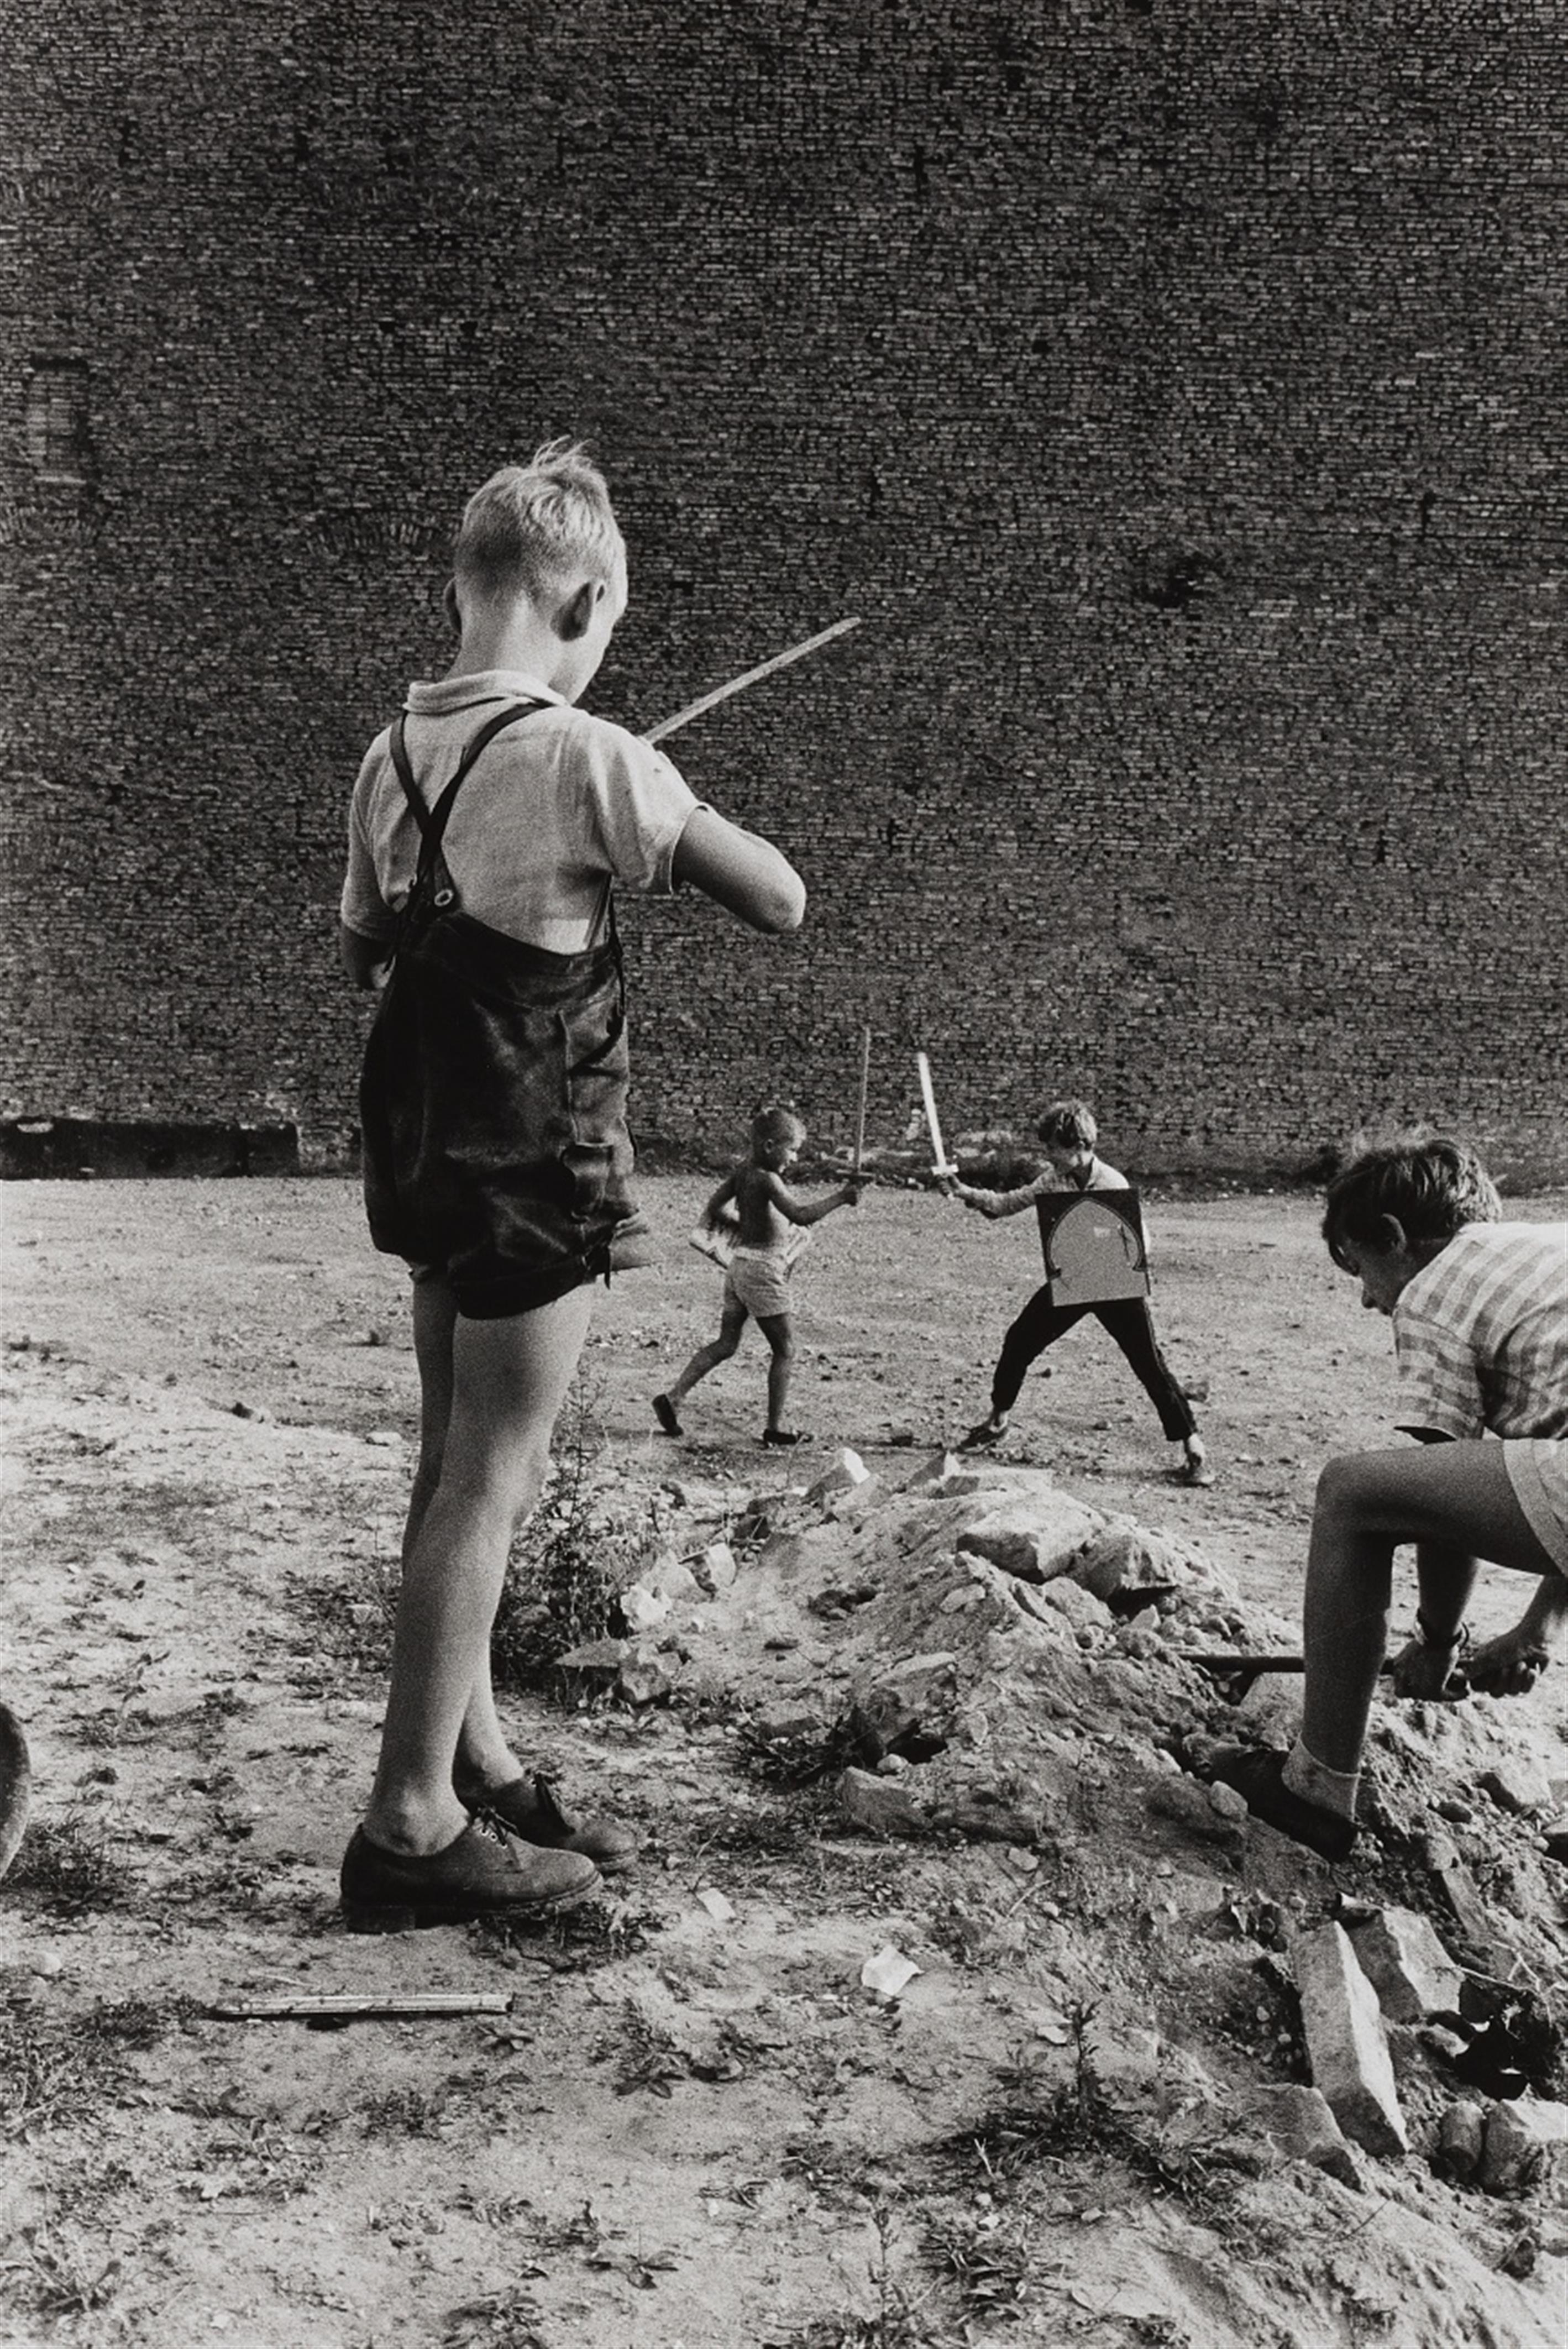 Will McBride - Kriegsspiele auf Ruinengrundstück, Berlin - image-1